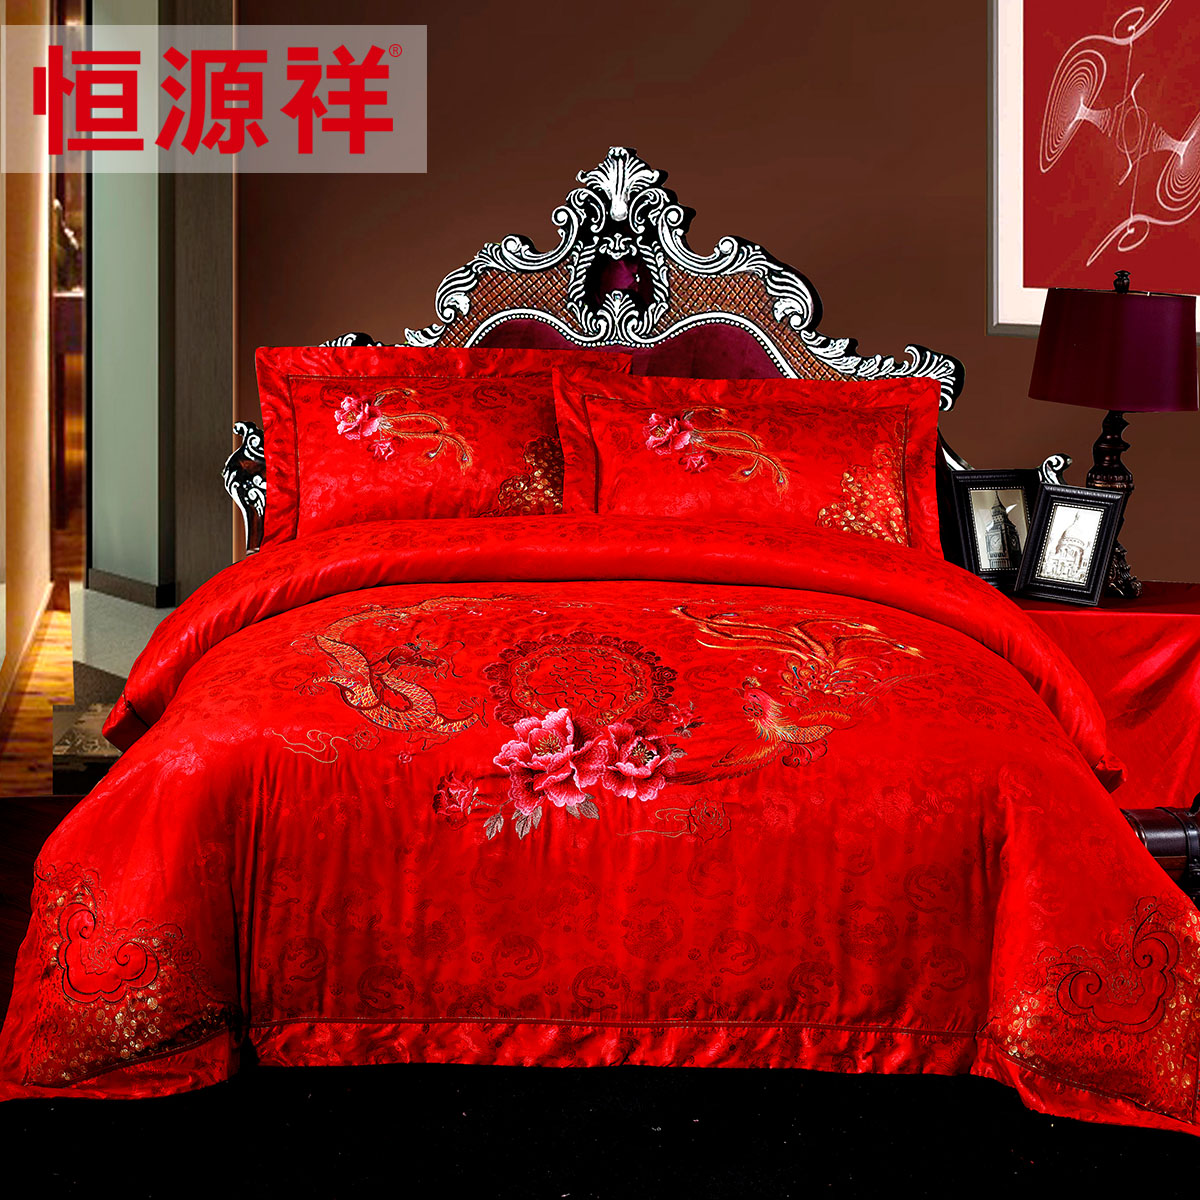 恒源祥家纺结婚婚庆床品四件套大红床单被罩被套4件套正品包邮